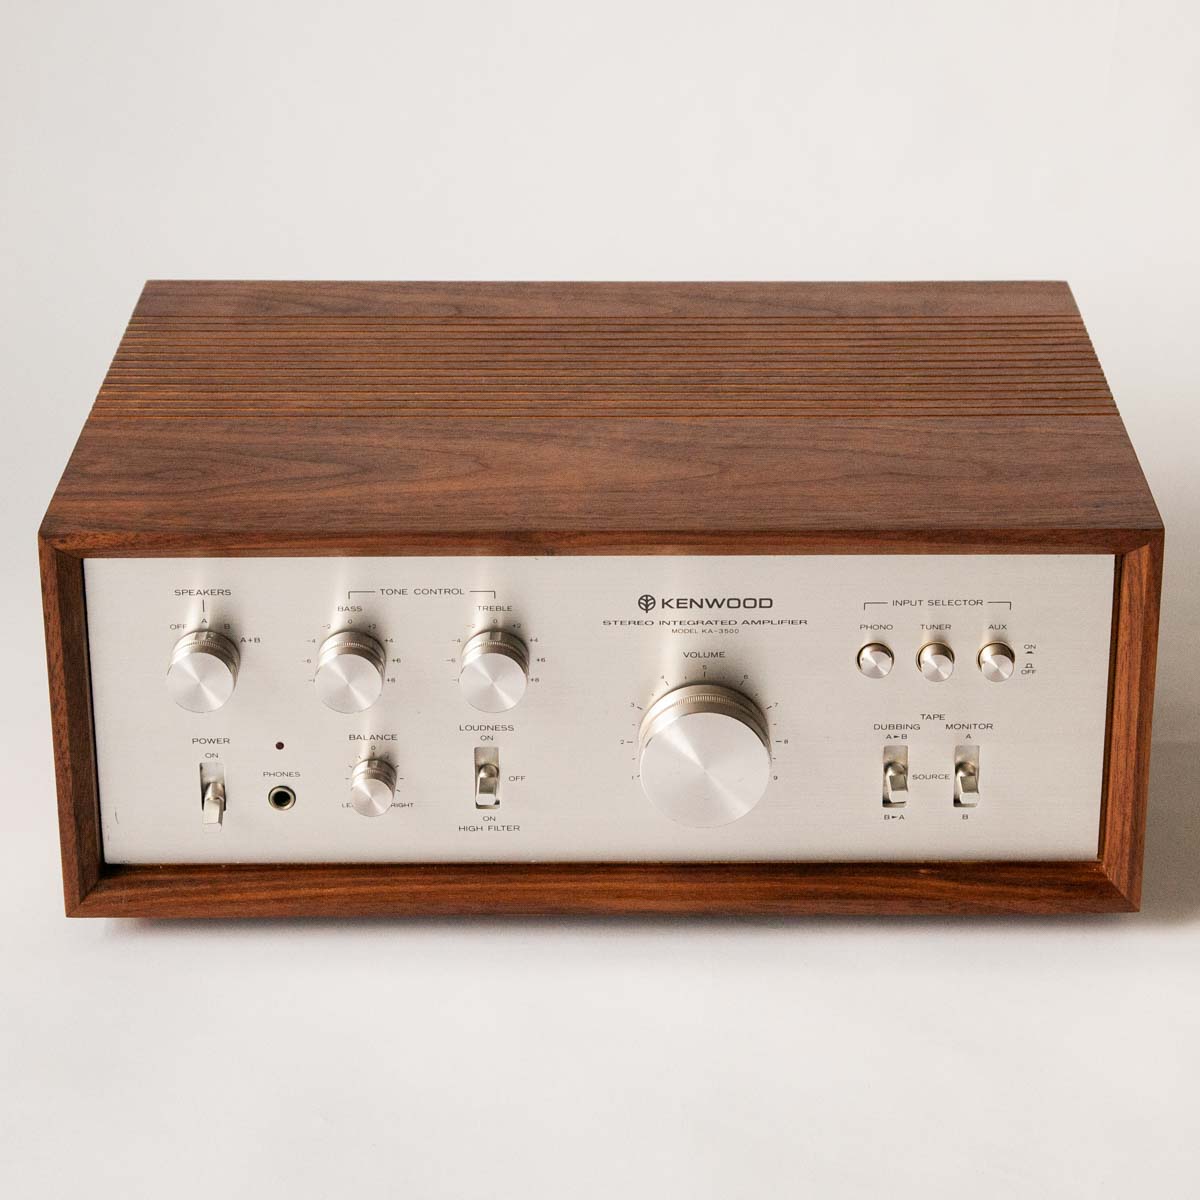 Kenwood amplifier case